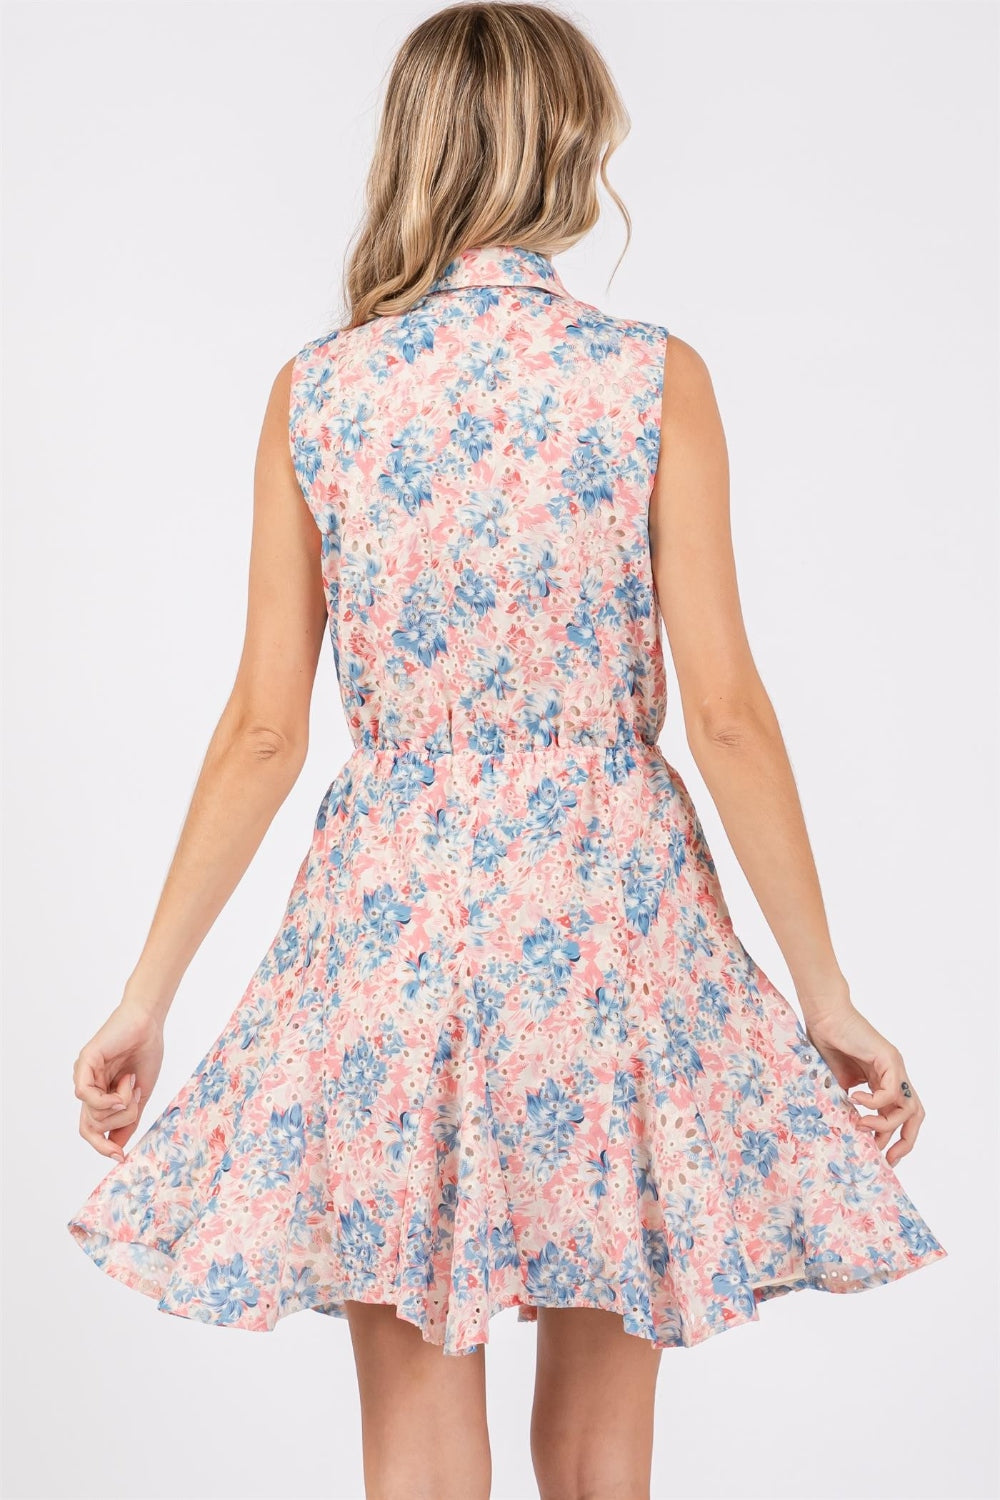 GeeGee – Ärmelloses Minikleid in voller Größe mit Blumenmuster und Ösen